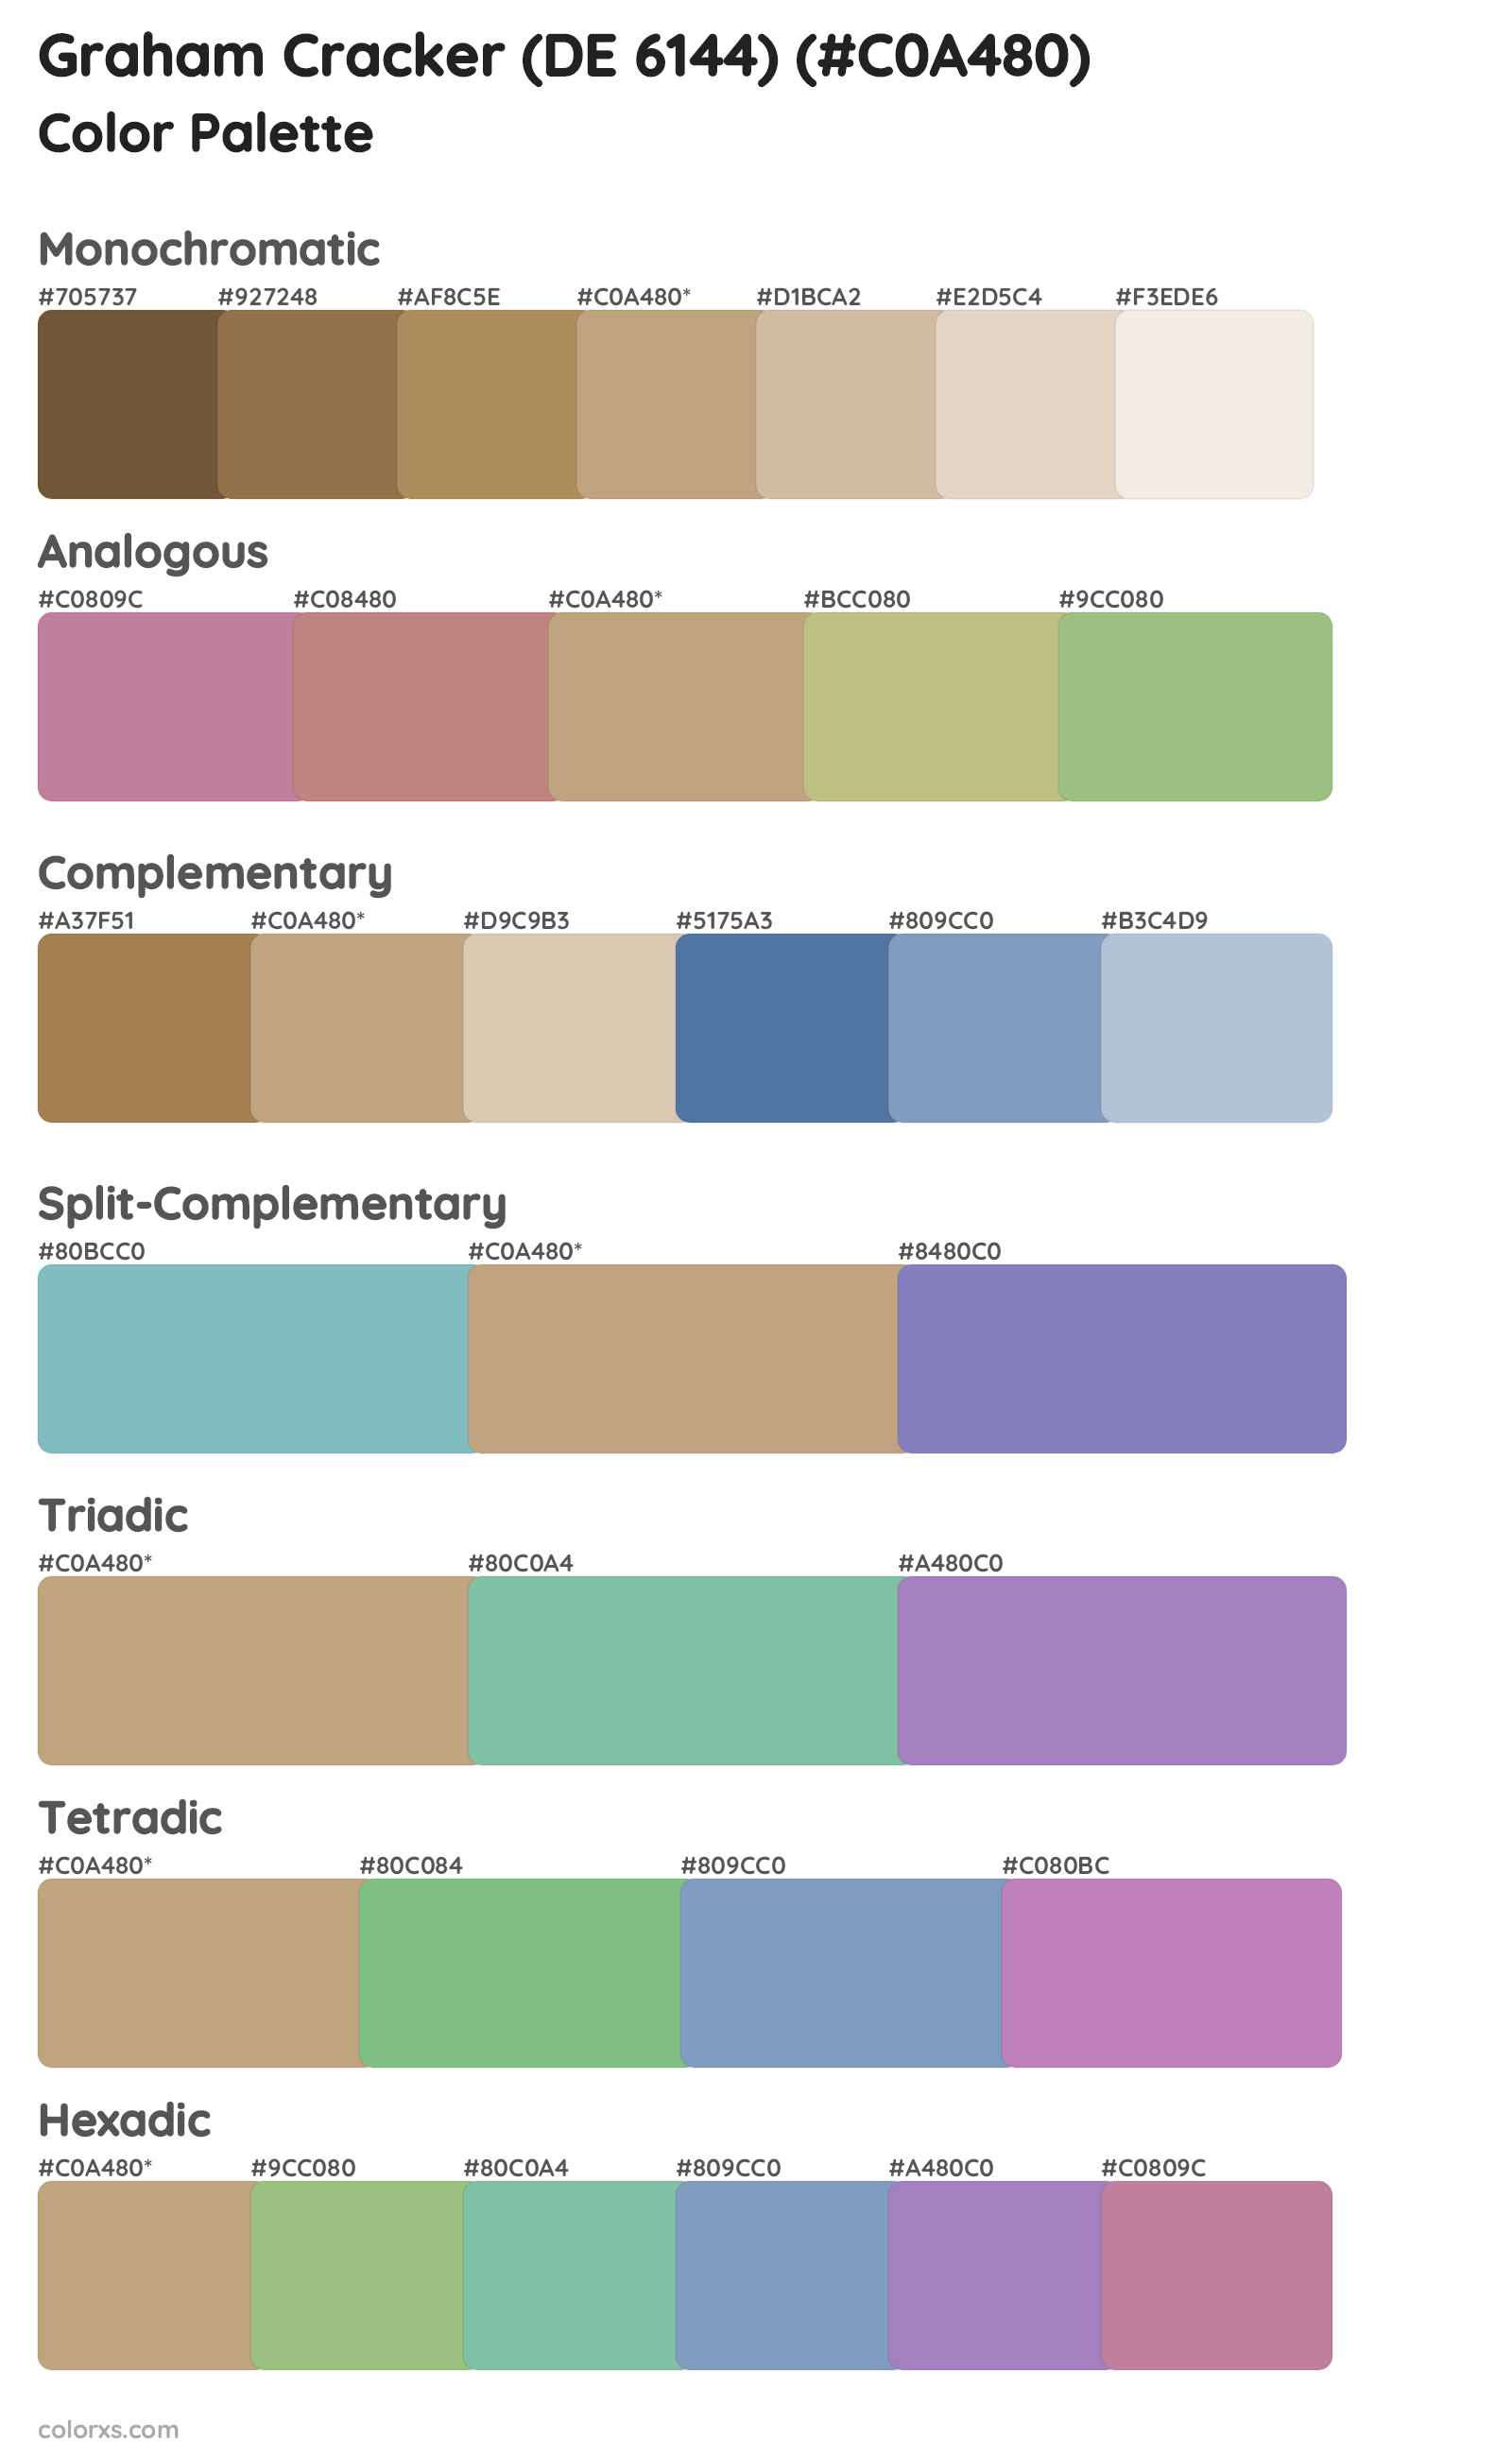 Graham Cracker (DE 6144) Color Scheme Palettes